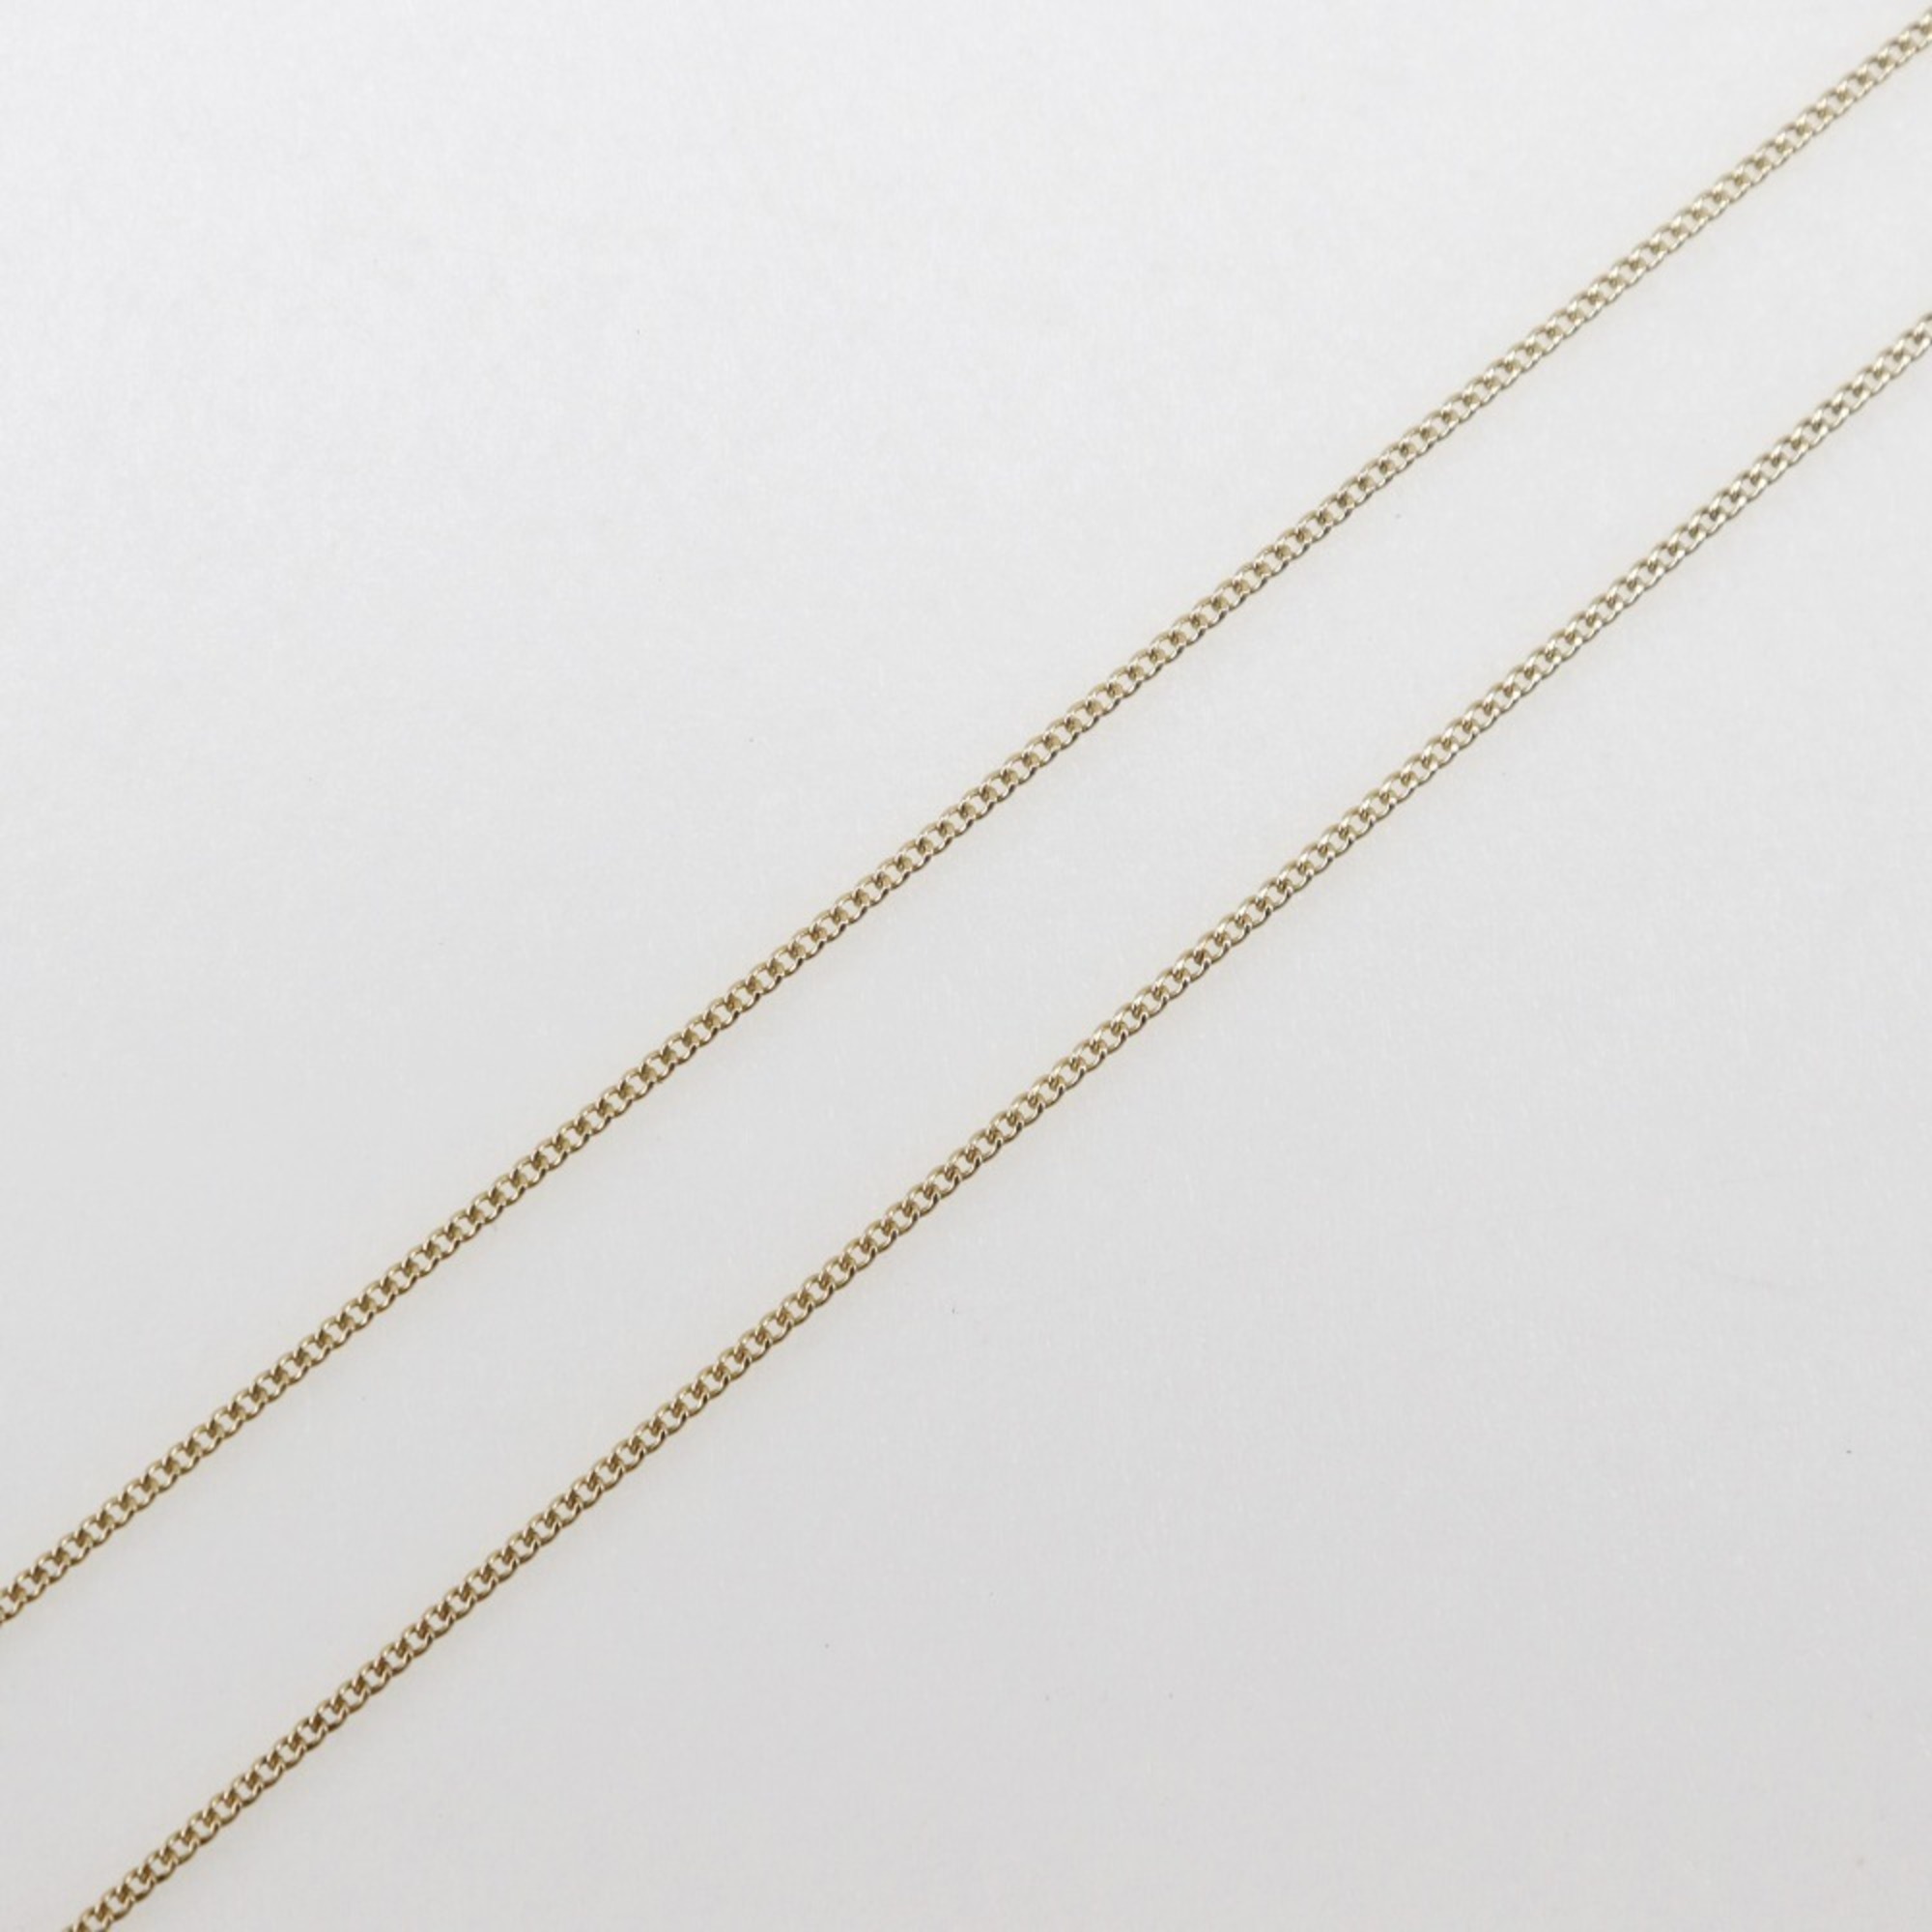 Tiffany & Co. Chain Cross Heart Necklace, K18 Yellow Gold x Rhodochrosite, approx. 3.6g, Heart, Women's